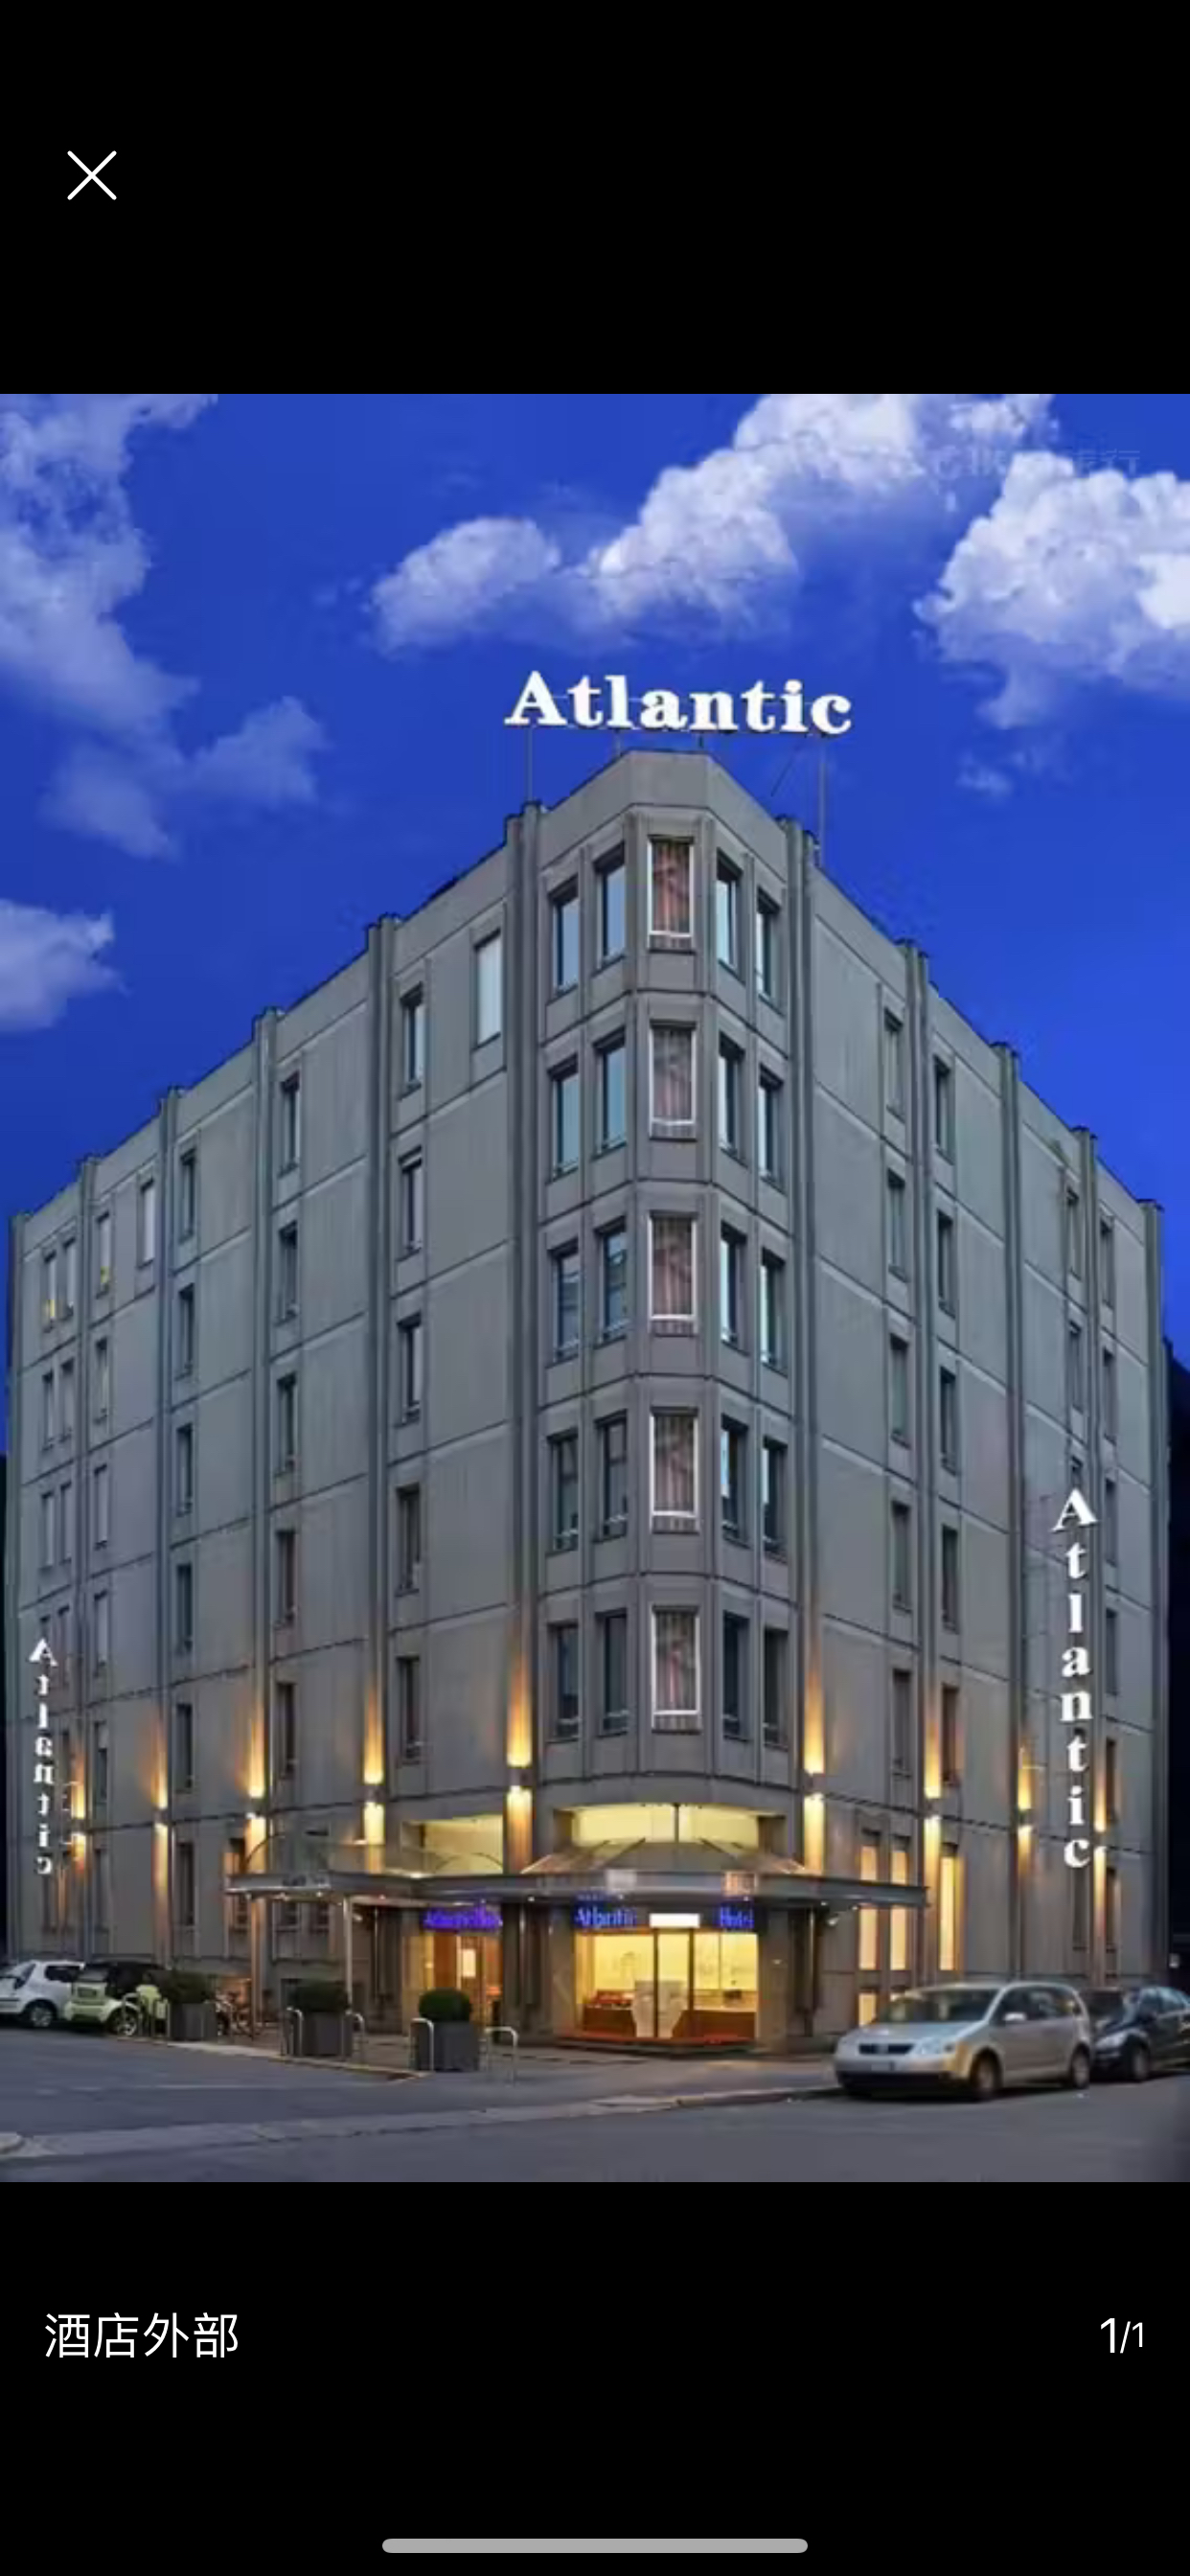 大西洋 C 酒店（c-hotels Atlantic）是一家位于意大利米兰的酒店，具有以下特点：  